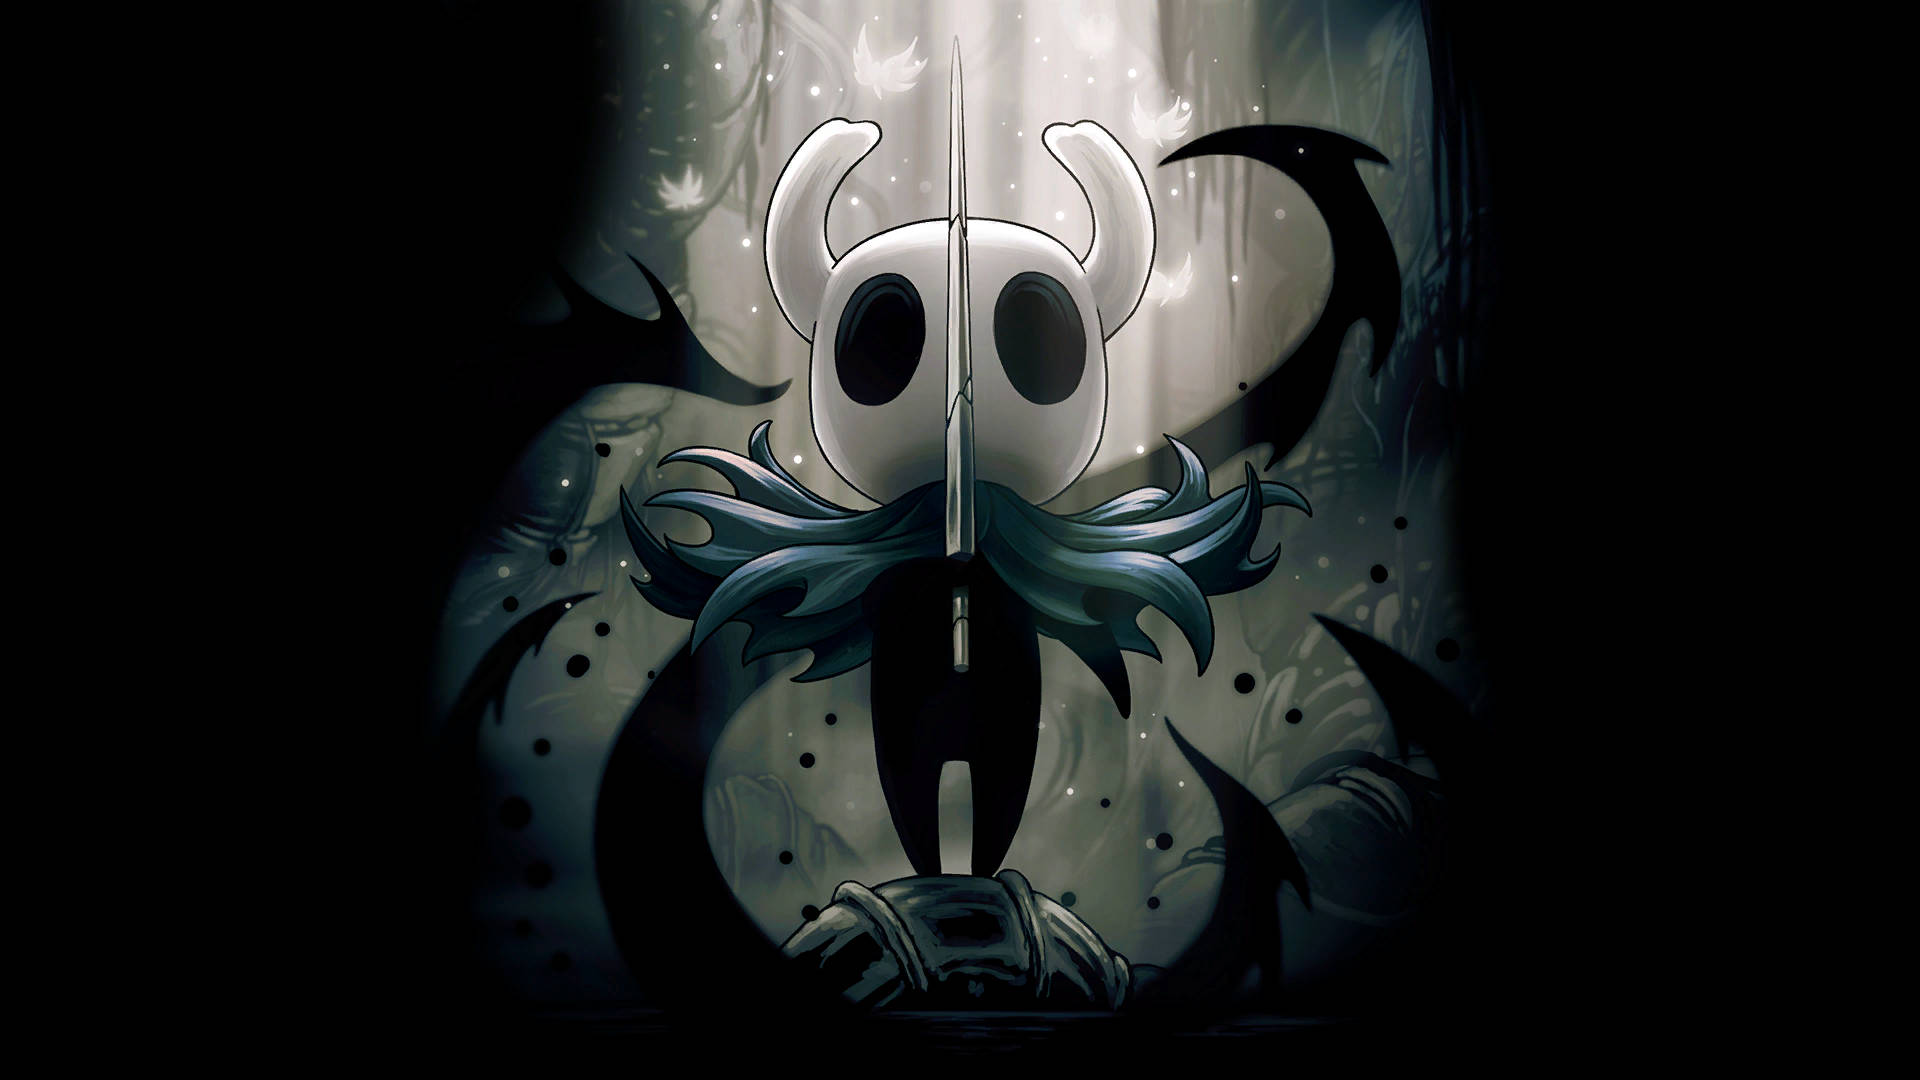 Hd Fan Art Poster Of Hollow Knight